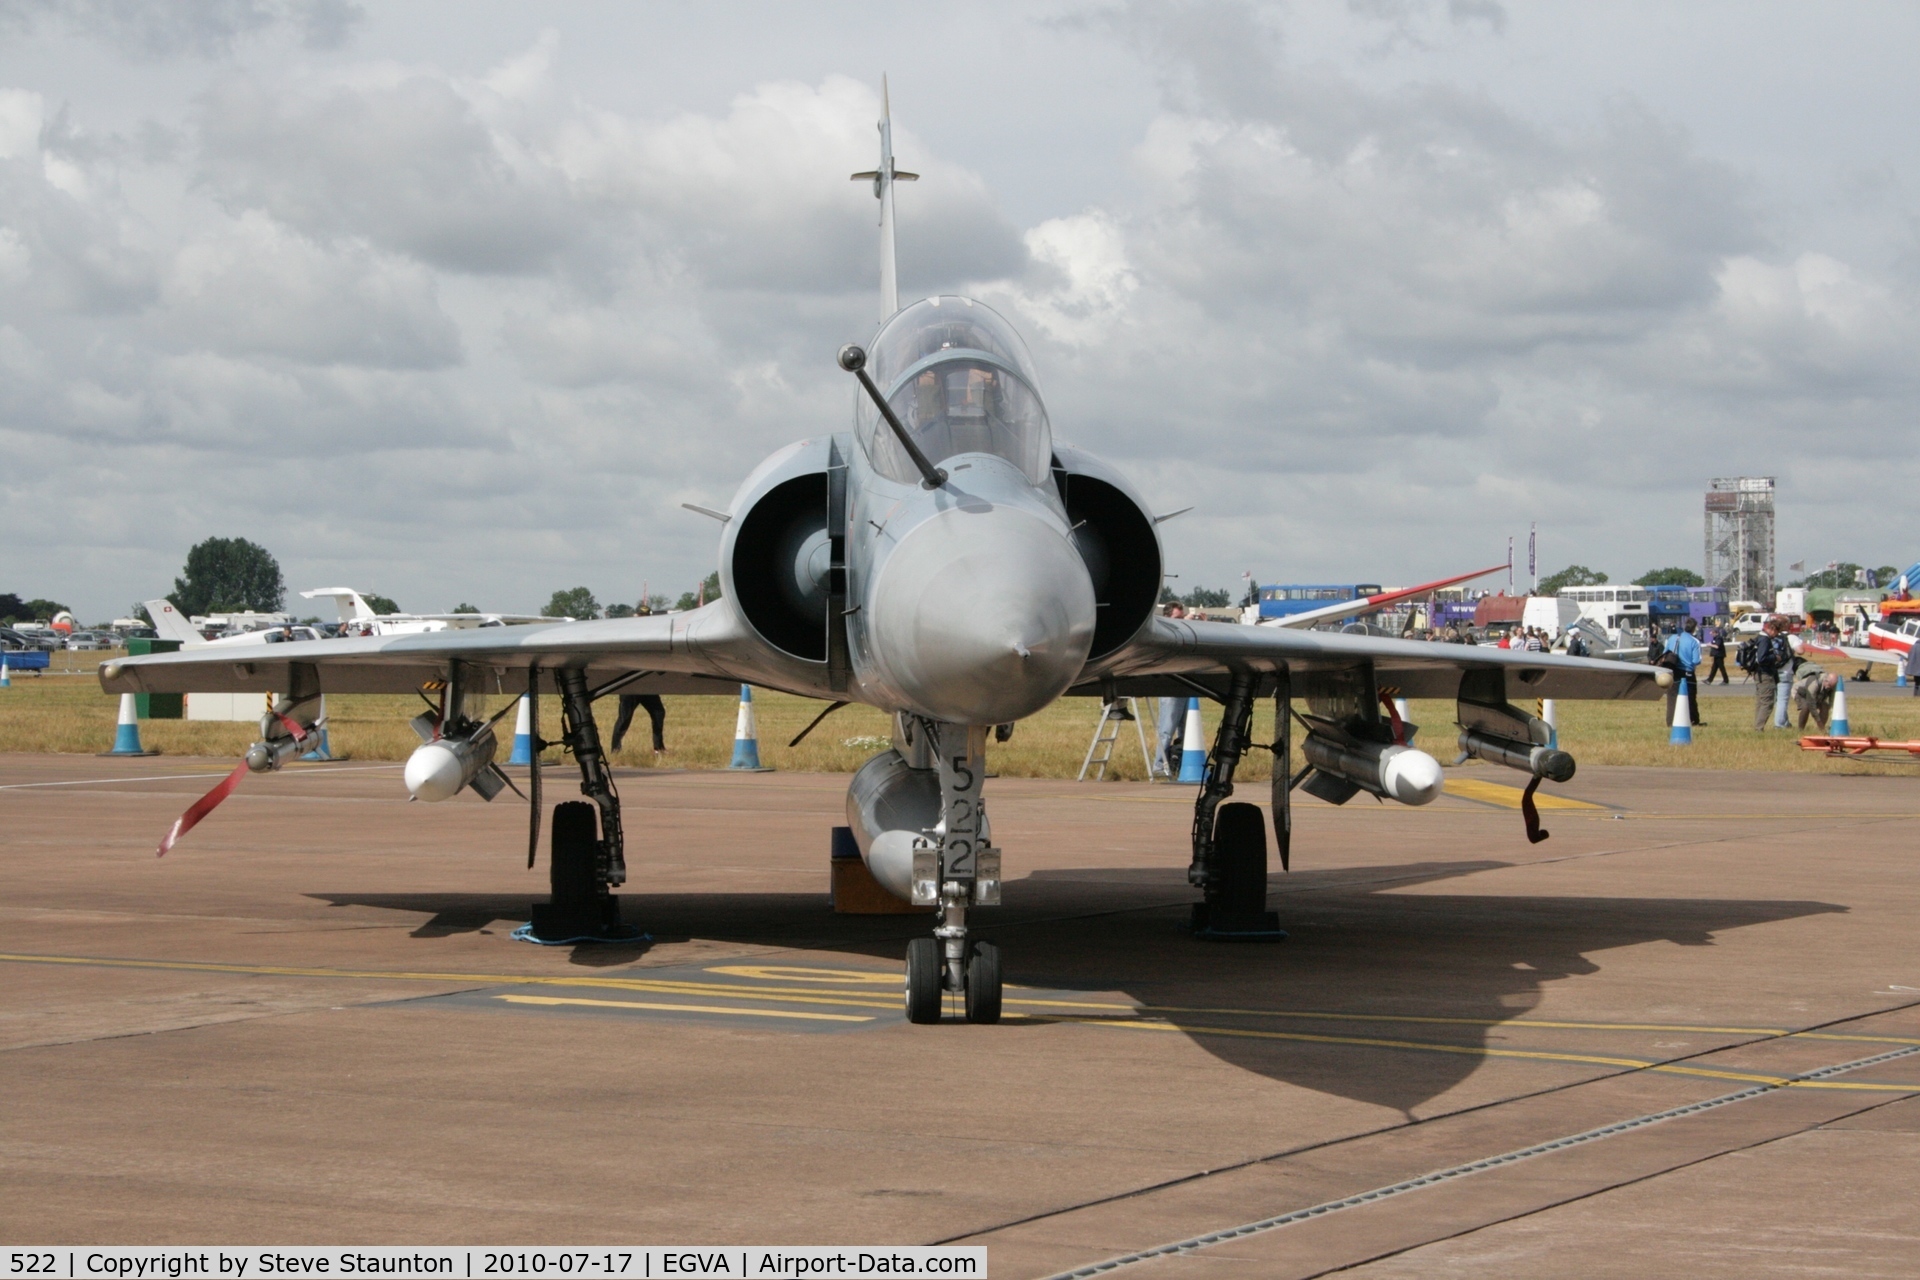 522, Dassault Mirage 2000B C/N 297, Taken at the Royal International Air Tattoo 2010